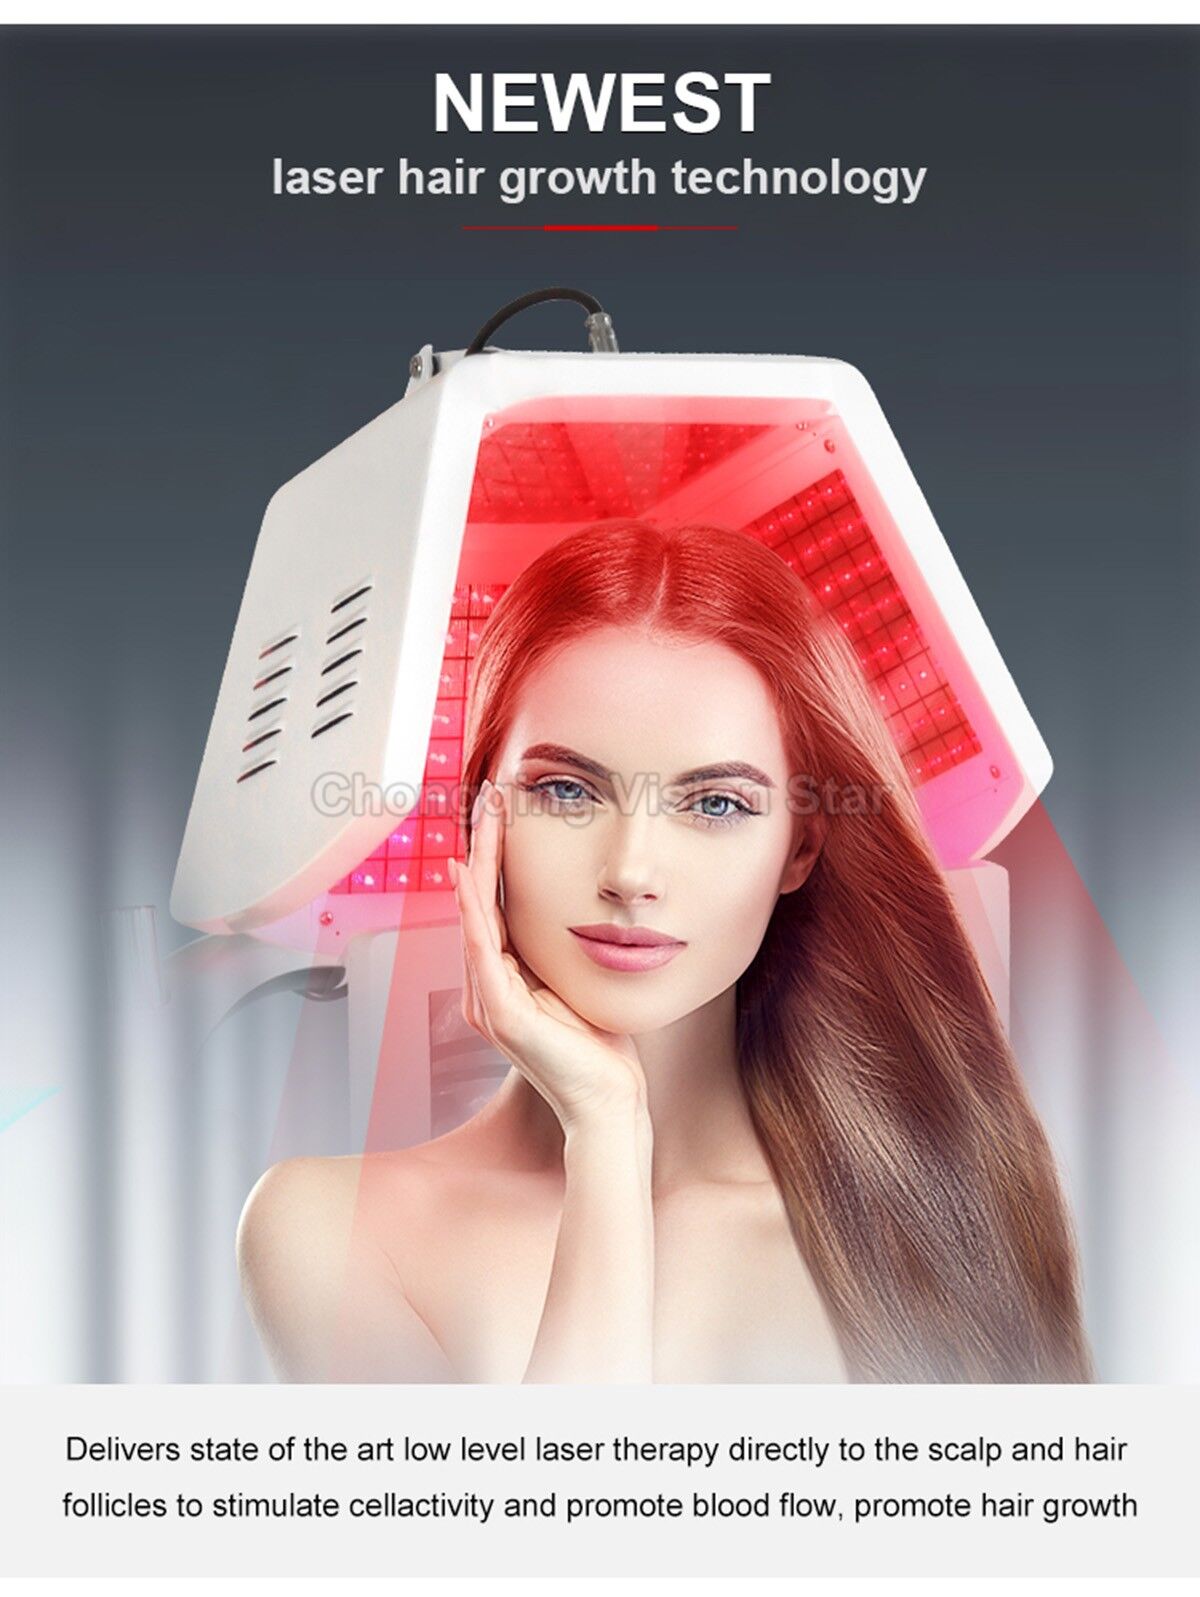 HYB-LaserH Laser Hair Regrowth Machine